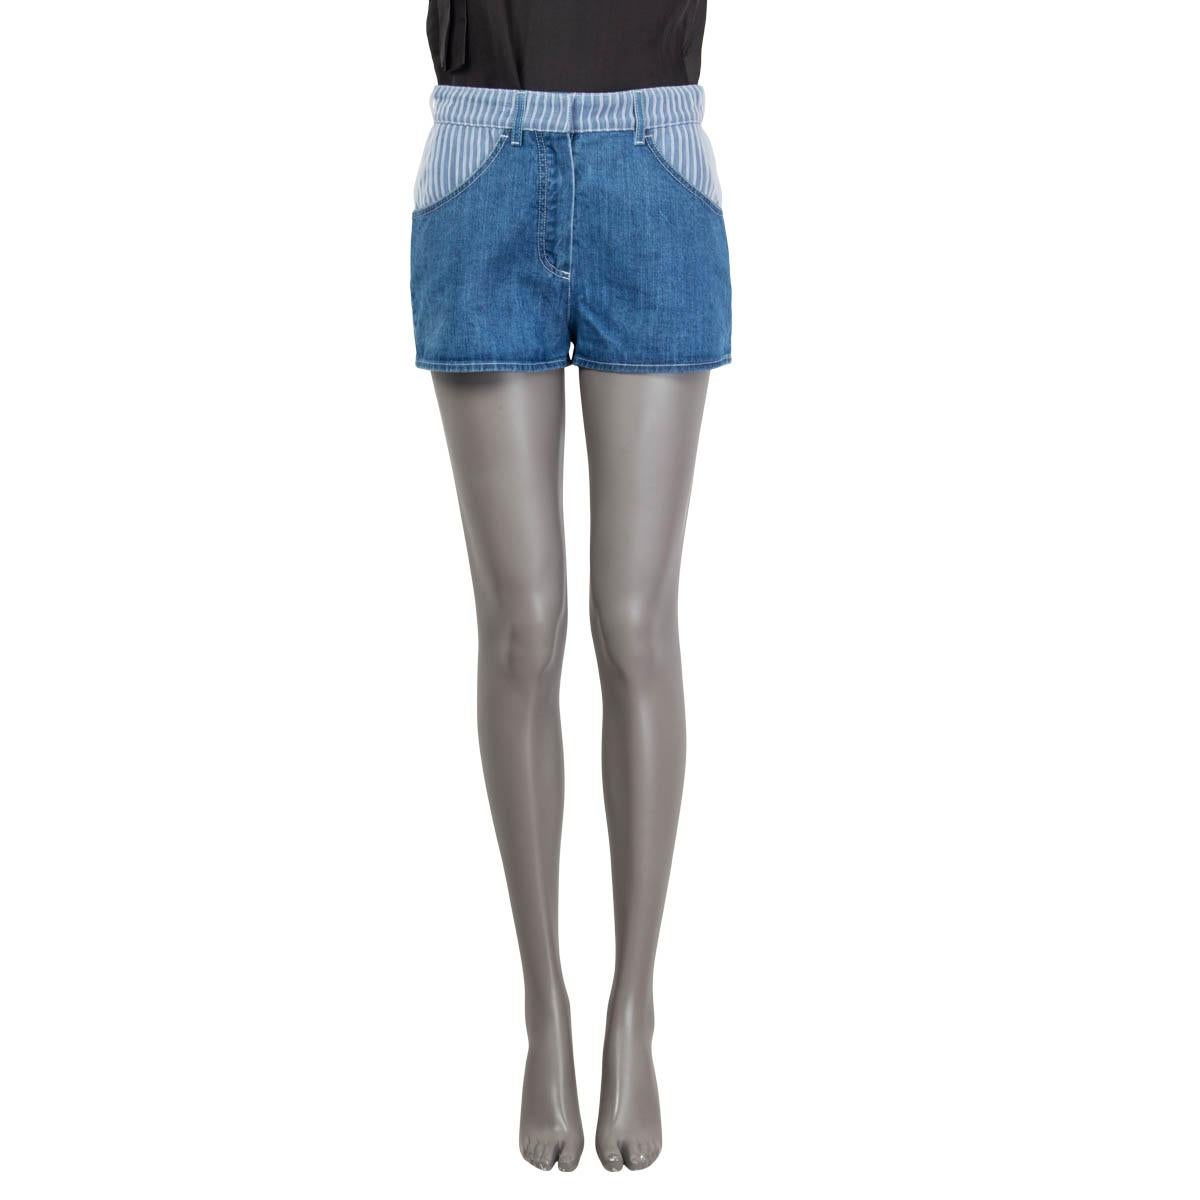 100% authentische Chanel Hot Pants Shorts aus blauer Denim-Baumwolle (100%) und weißem Polyester (100%) mit Plissee-Details auf der Vorder- und Rückseite. Wurde mit einem kleinen Riss an der Gürtelschlaufe und an der Gesäßtasche getragen. Insgesamt